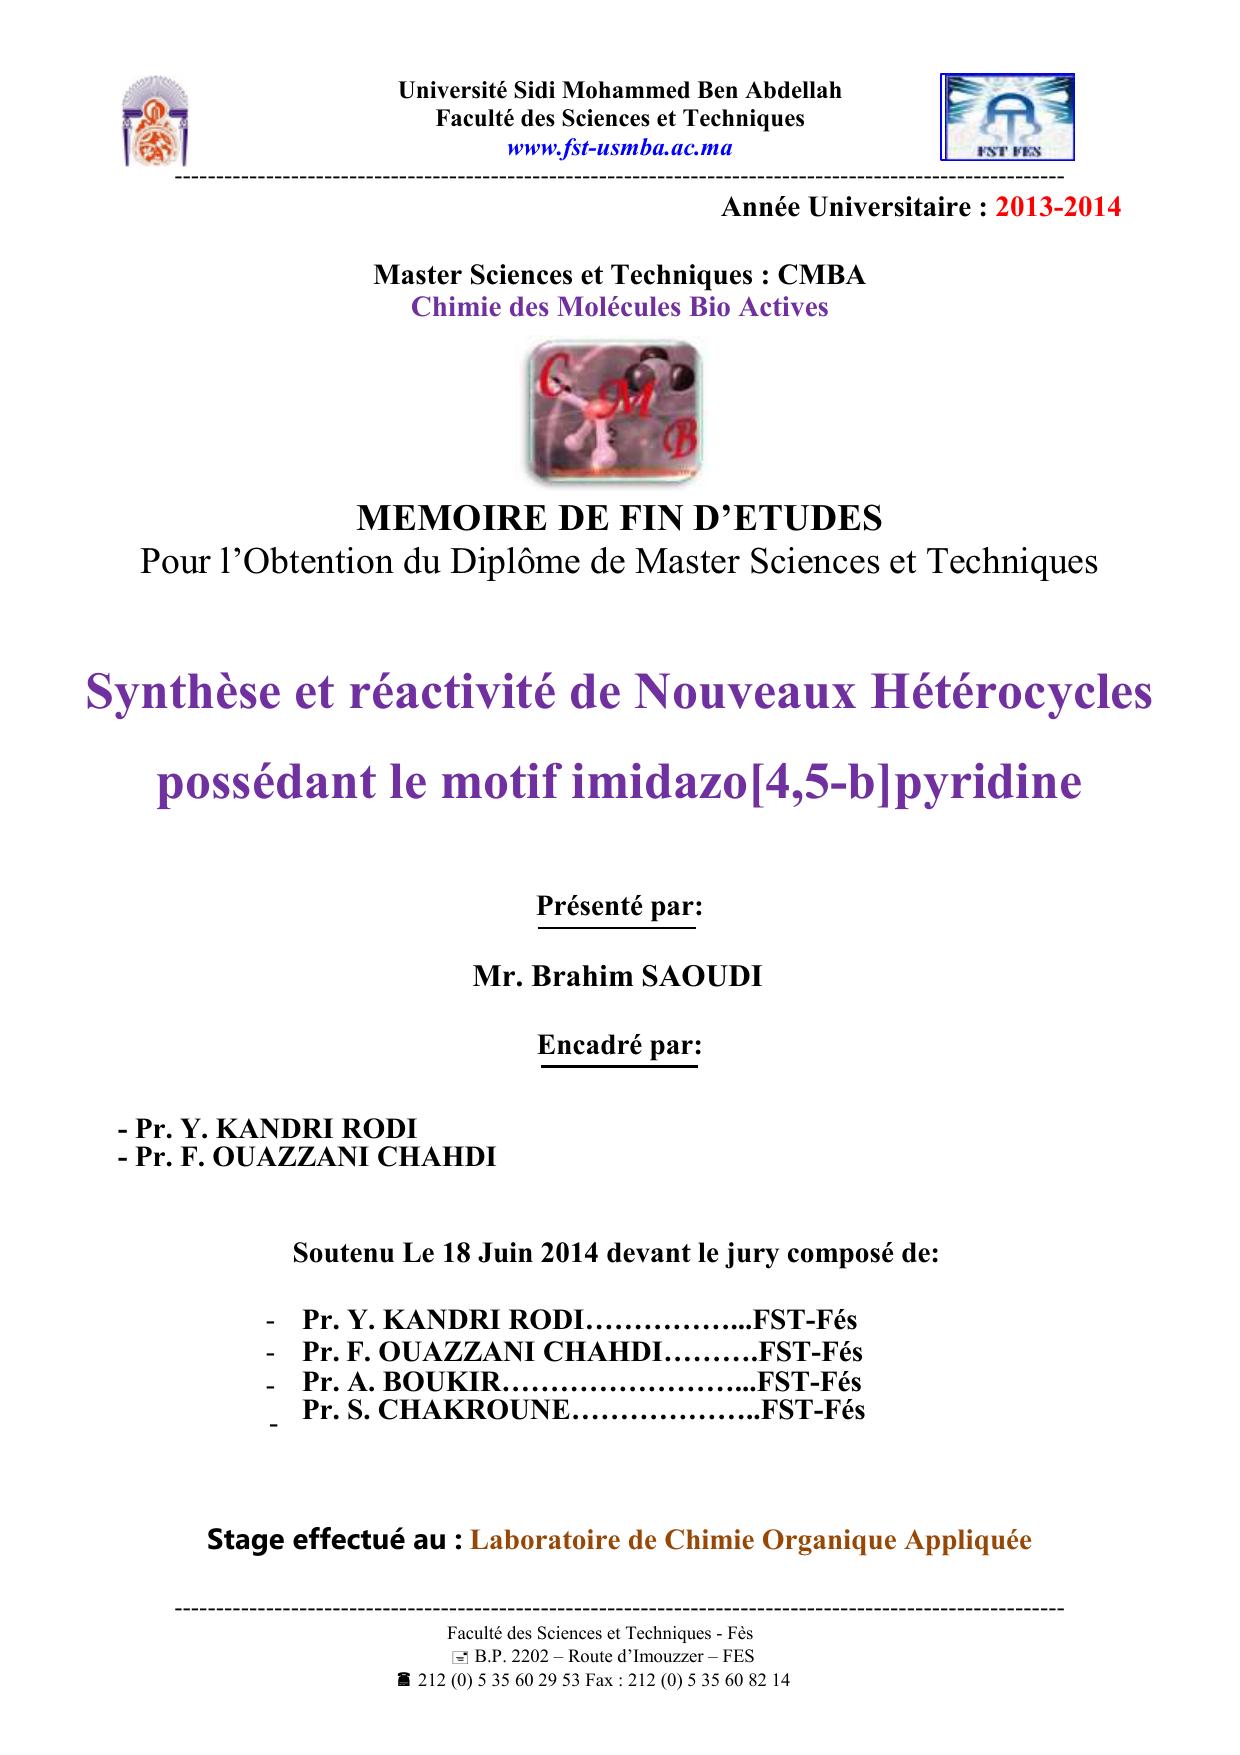 Synthèse et réactivité de Nouveaux Hétérocycles possédant le motif imidazo[4,5-b]pyridine